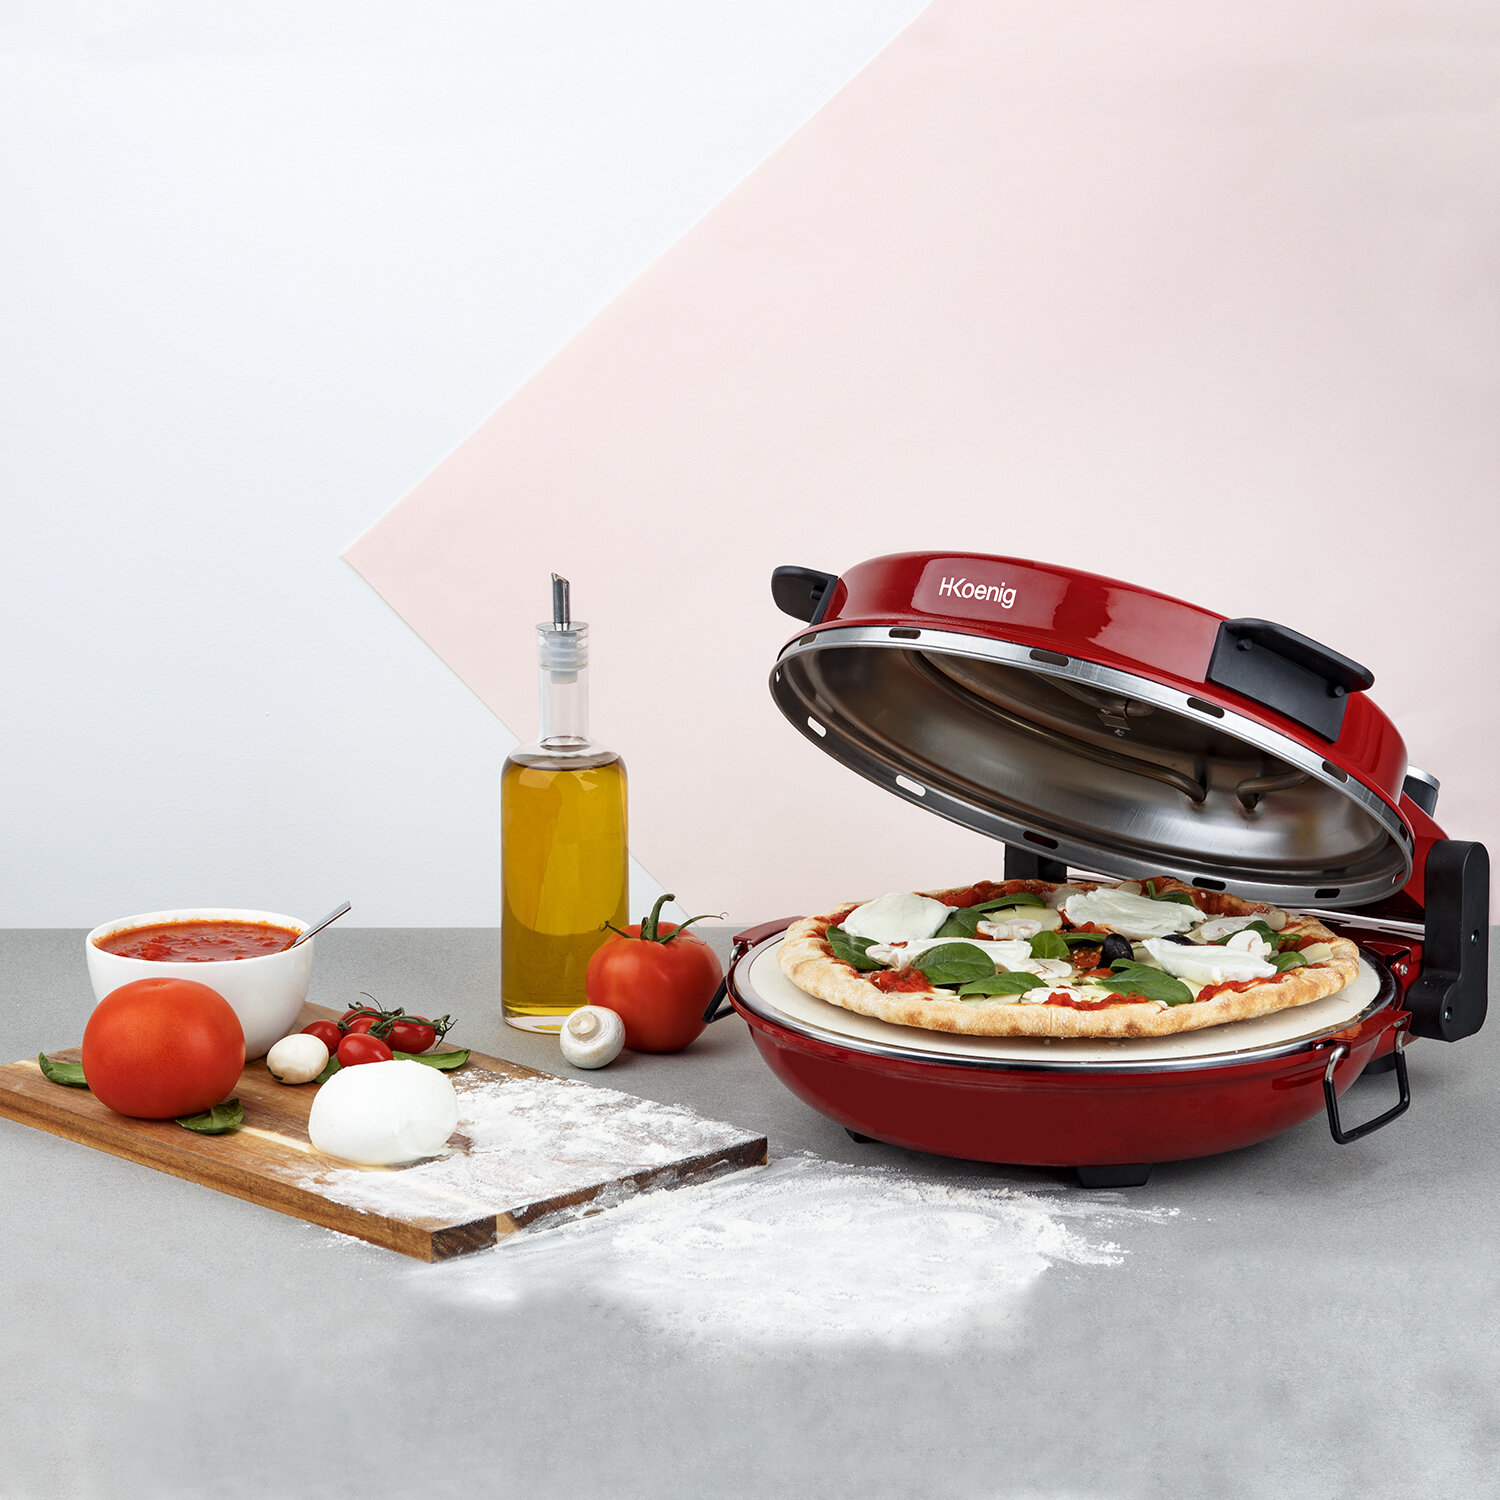 I nostri prodotti > cucina quotidiana > forno per pizza napoletana